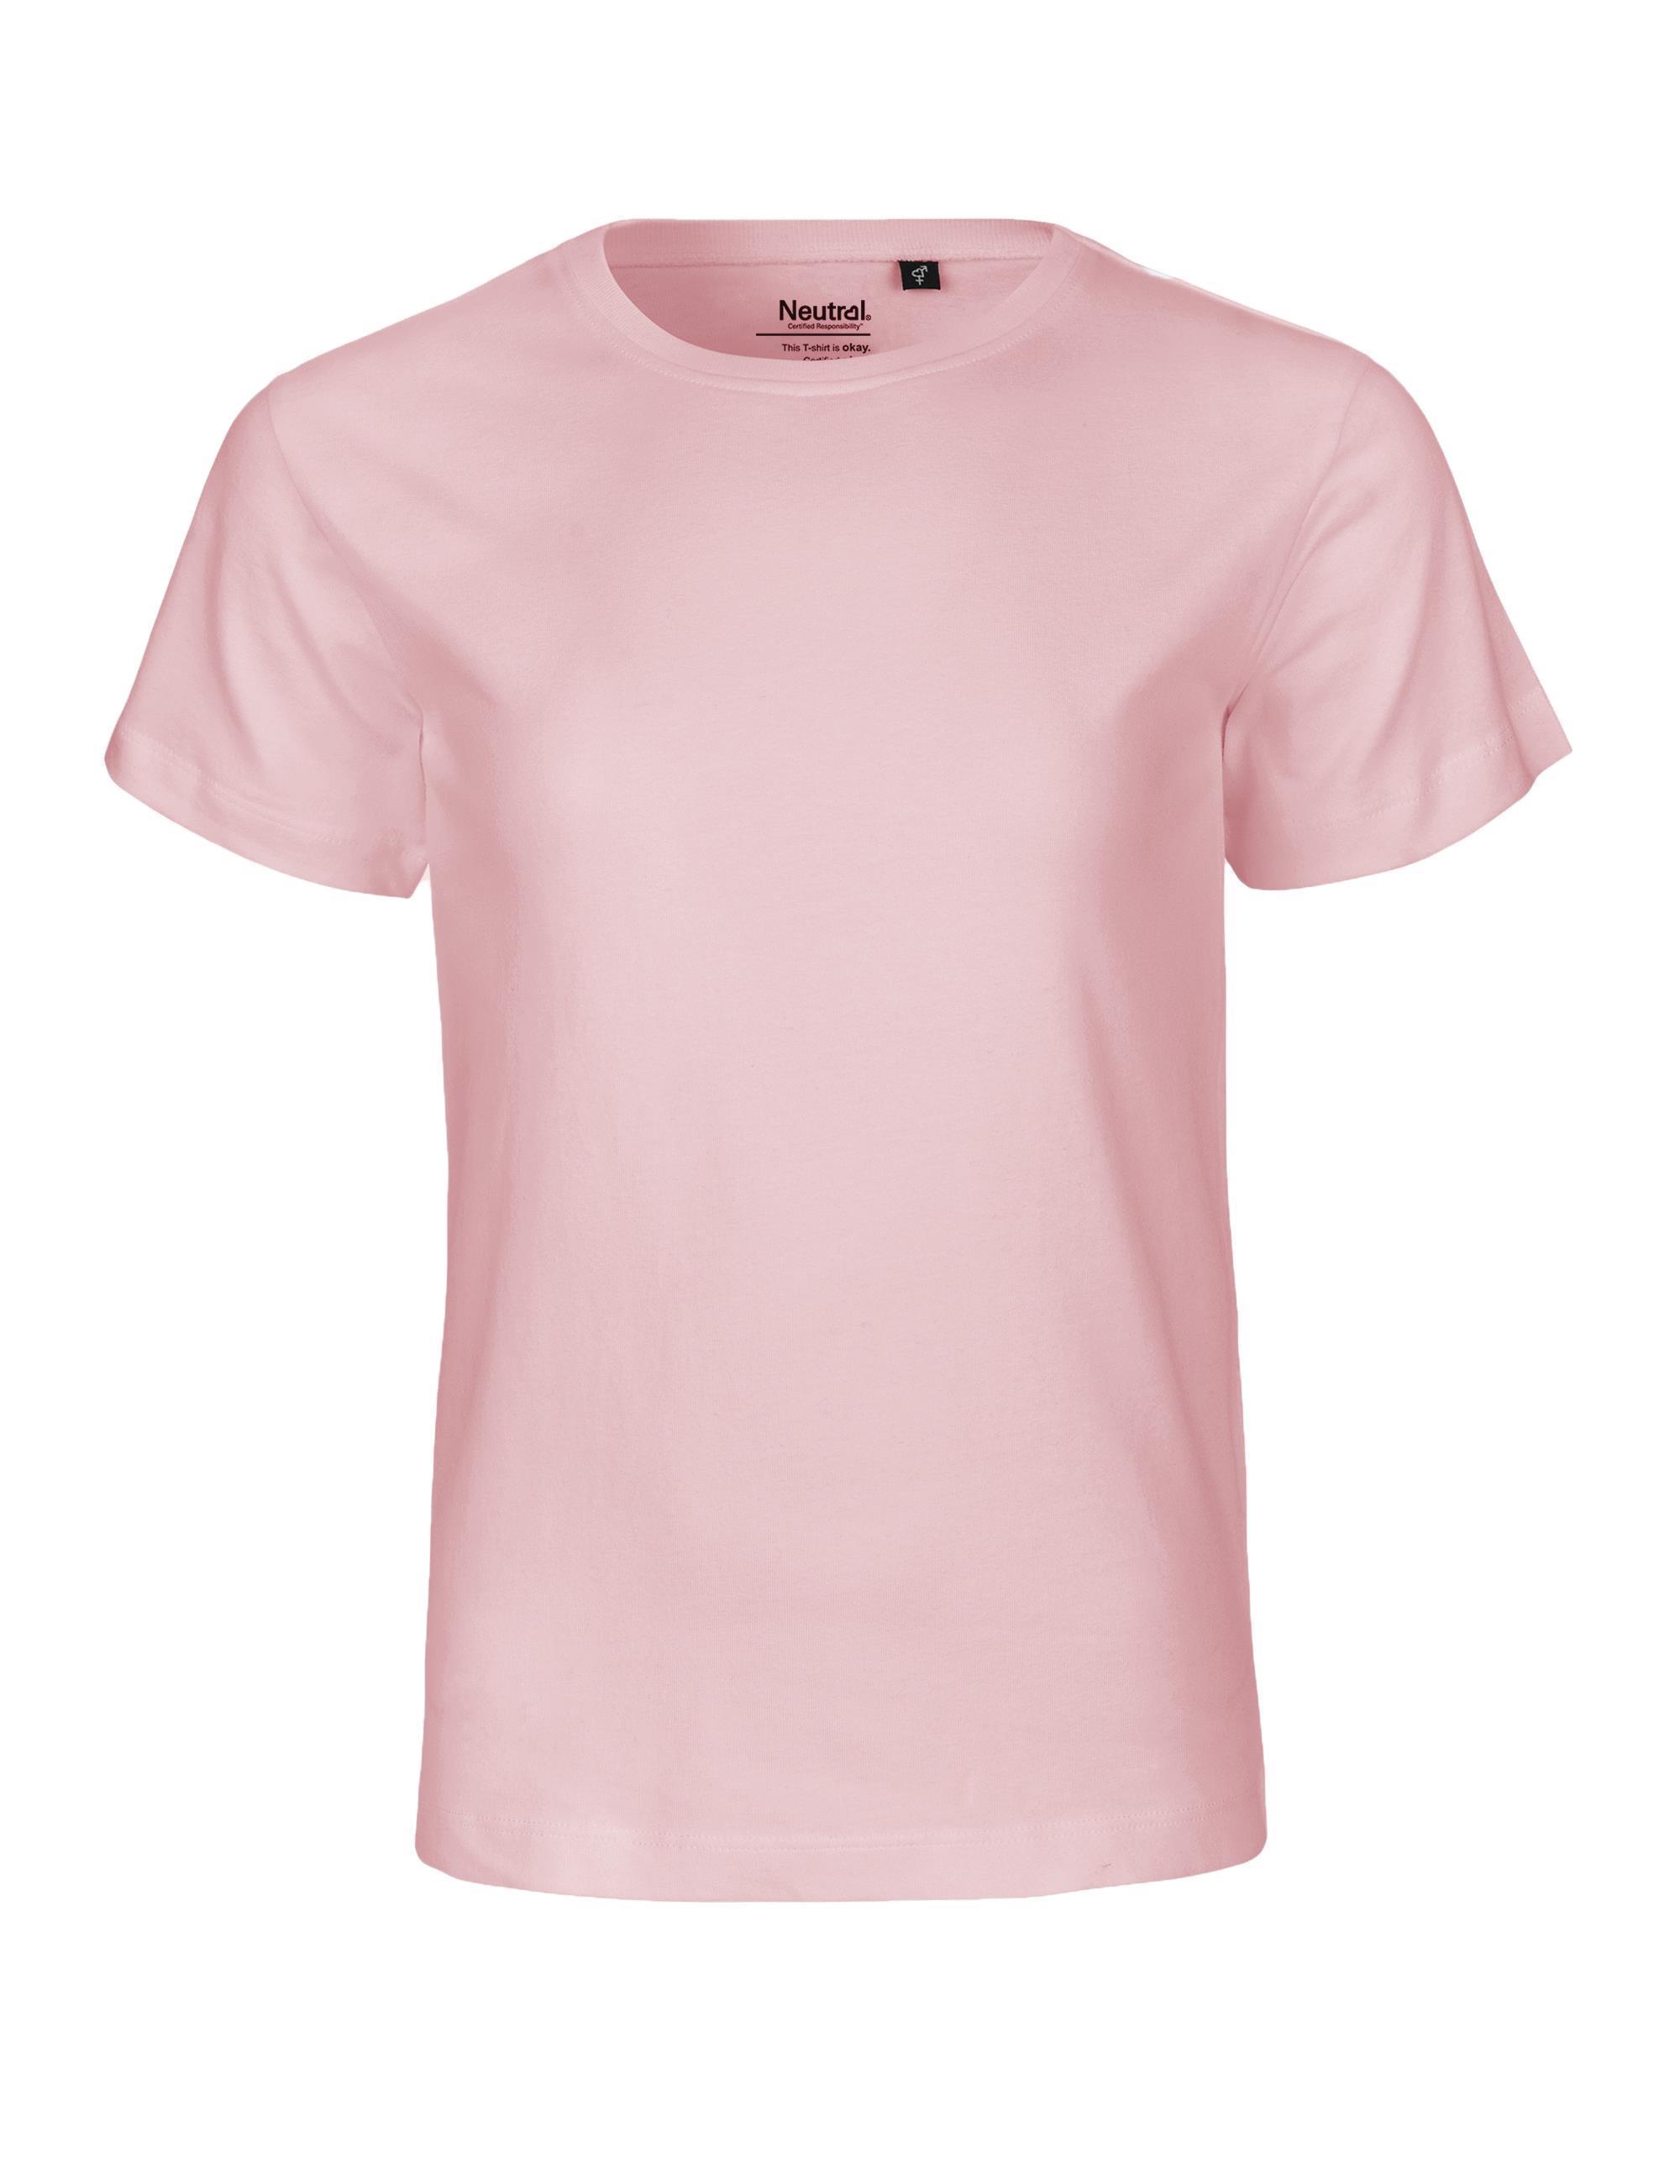 Organic Fairtrade kids T-Shirt 155 g/m² Neutral® Light Pink 92/98 cm